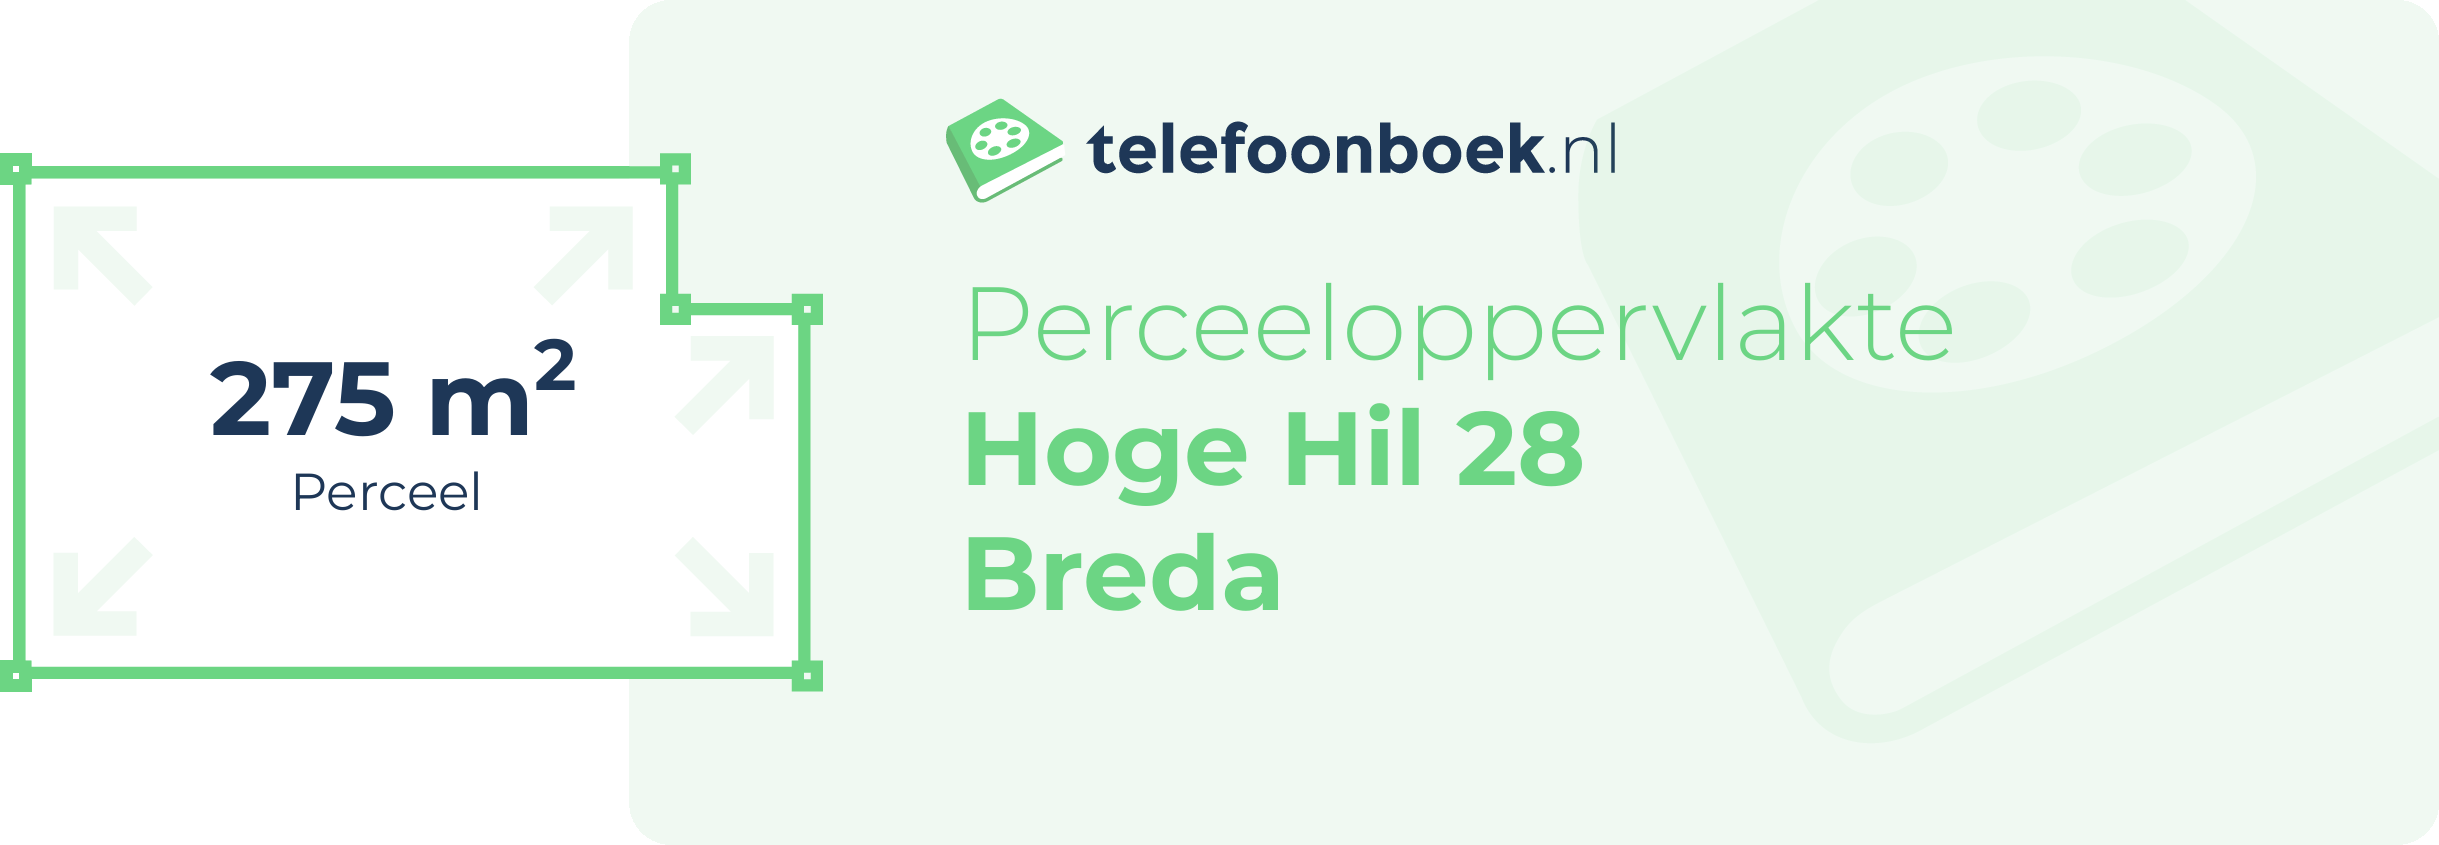 Perceeloppervlakte Hoge Hil 28 Breda